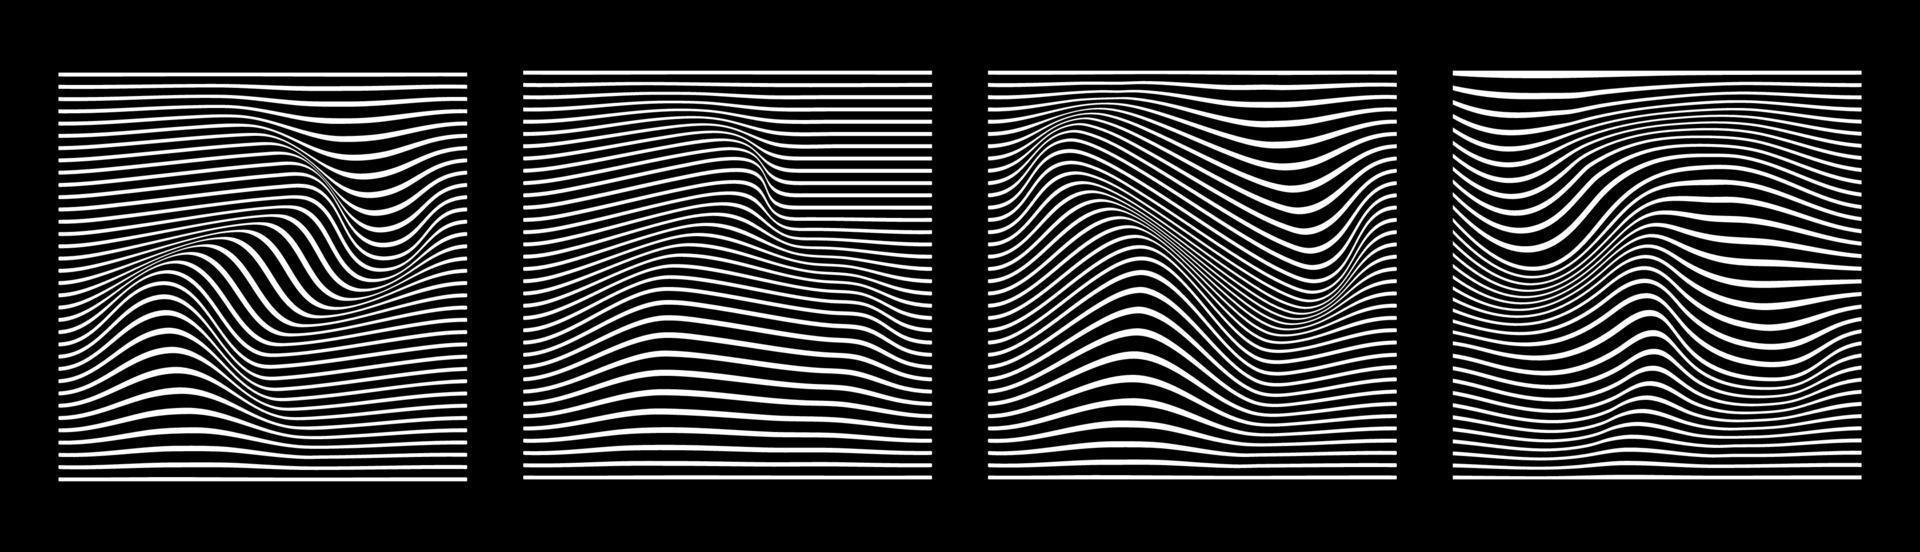 schwarz-weißer abstrakter wellenlinienstreifen-vektorillustrationssatz. wellenförmiger hintergrund der optischen kunst. Sammlung von gestreiften Linien Illusion. vektor